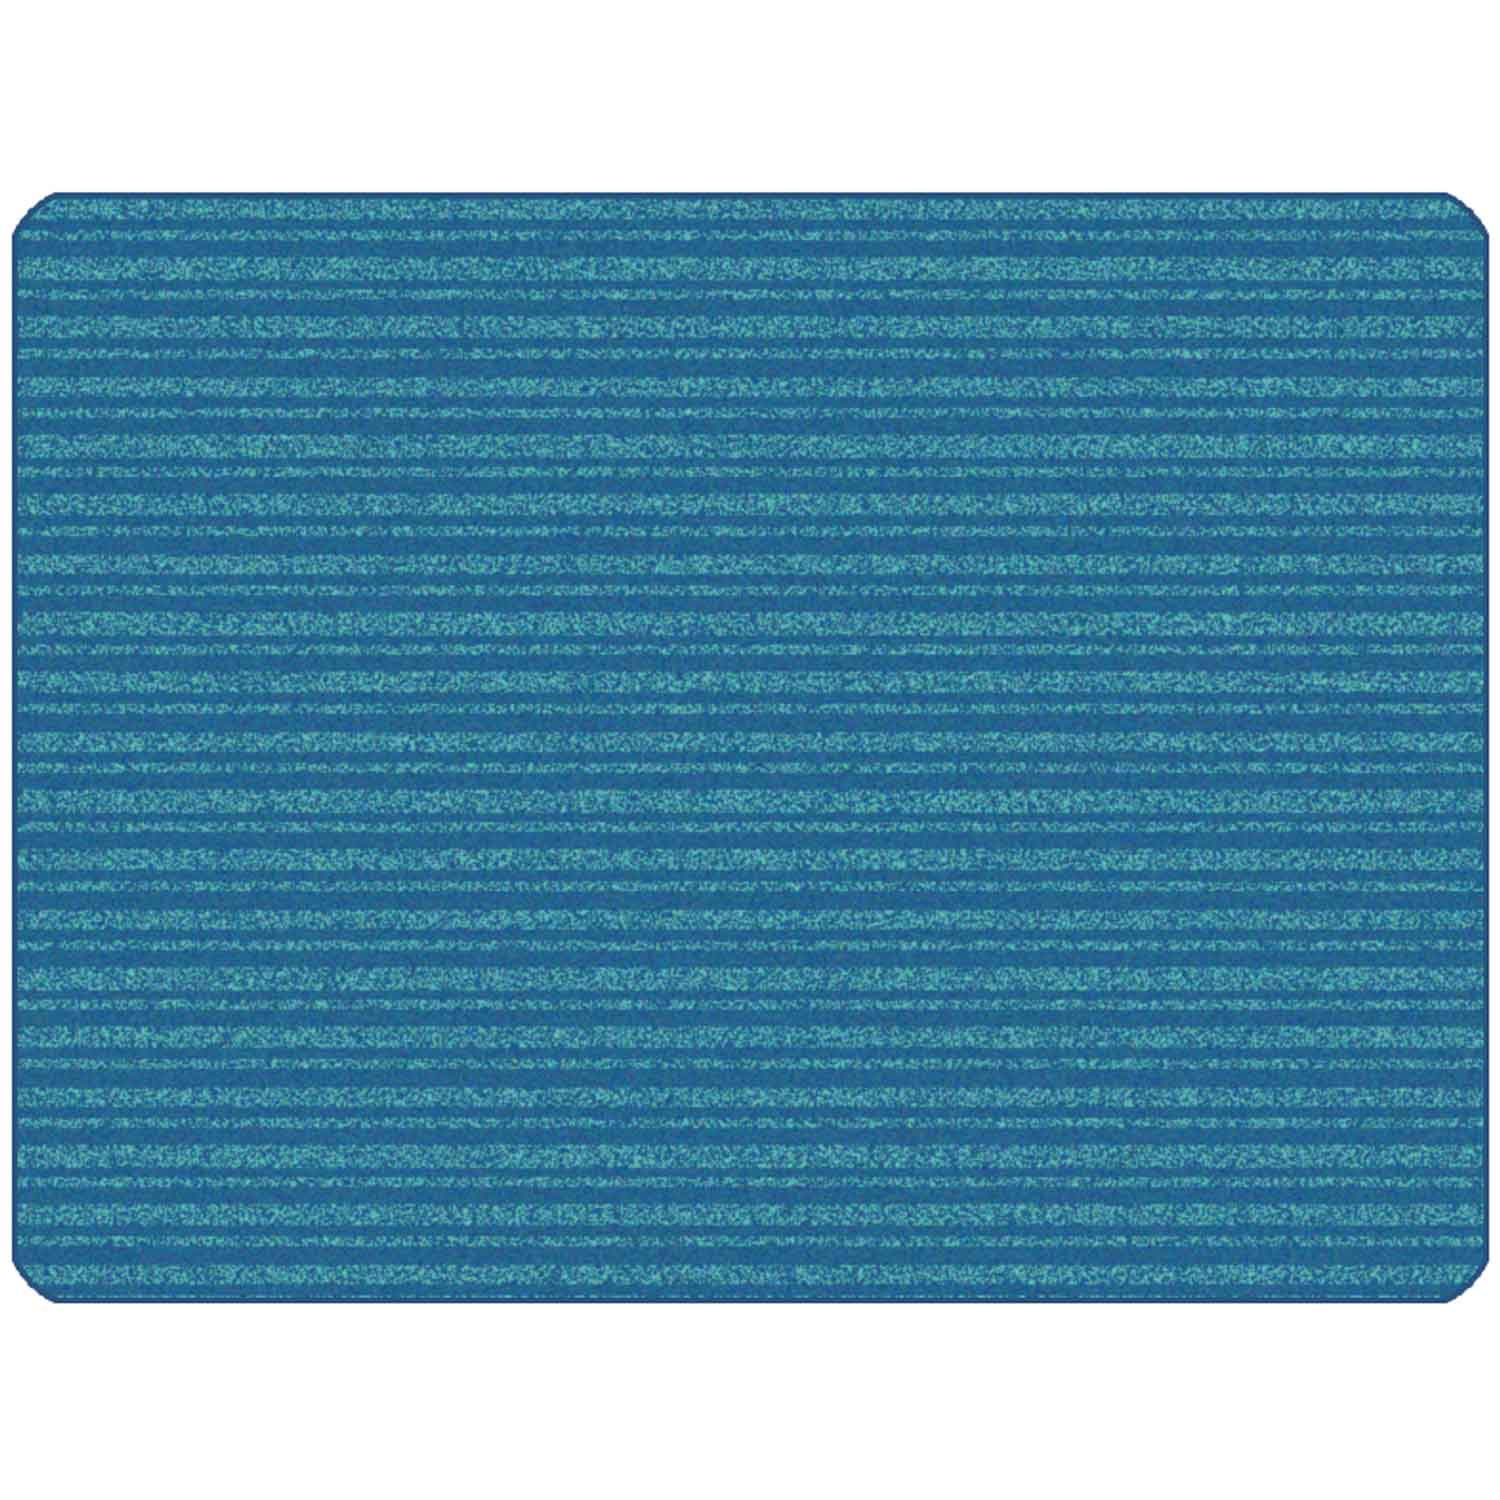 KIDSoft Subtle Stripes Rug Blue Teal 4 x 6